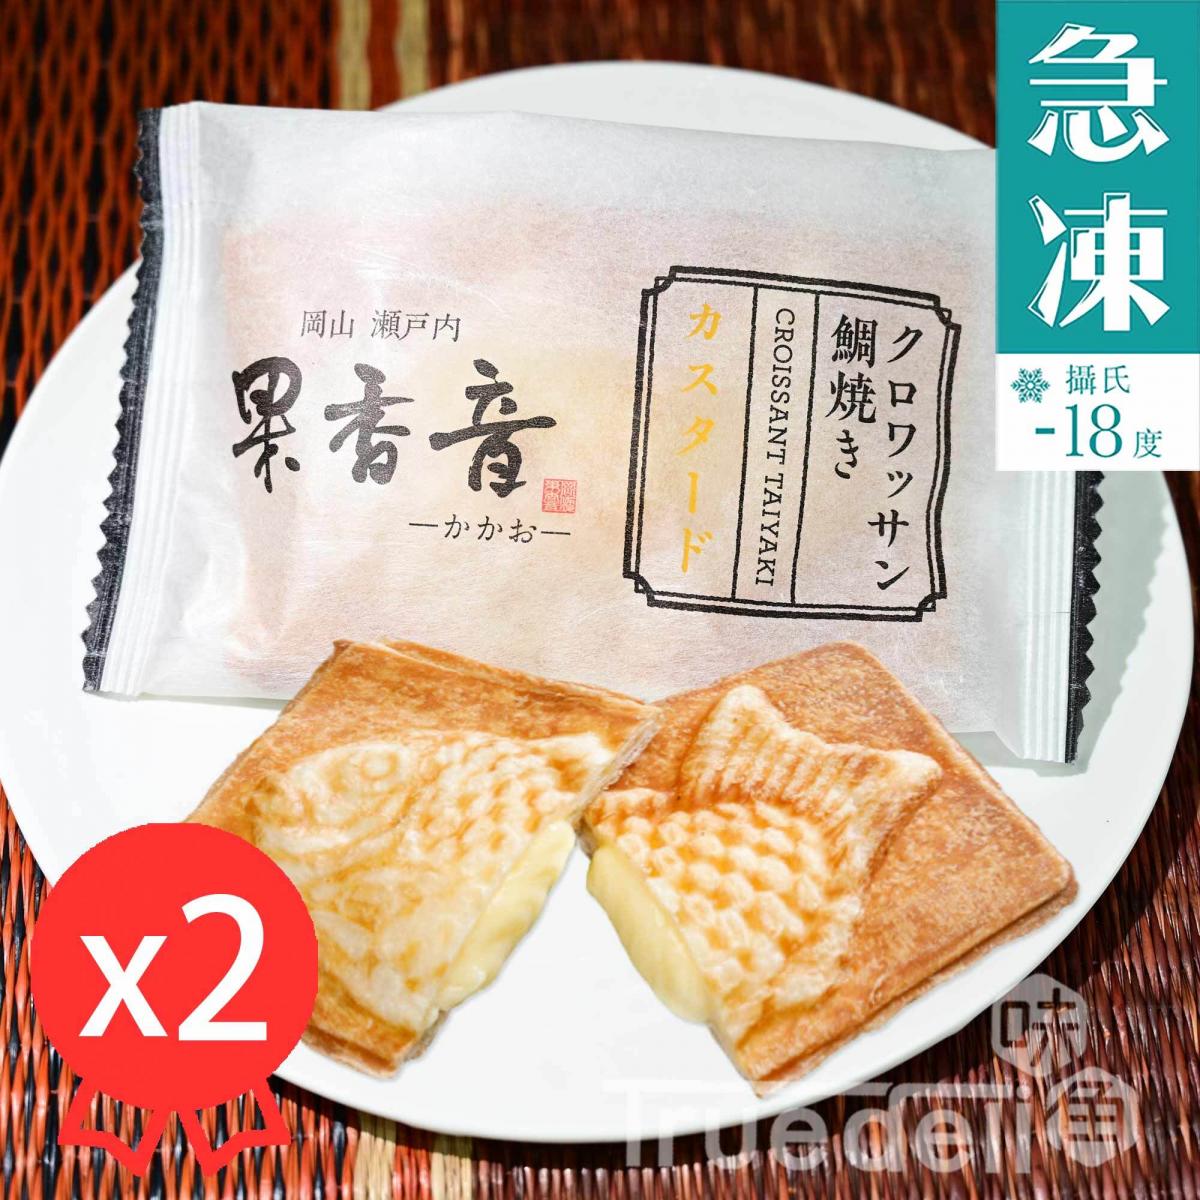 日本酥皮鯛魚燒 - 吉士味, 80g x 2件 (急凍 -18°C)